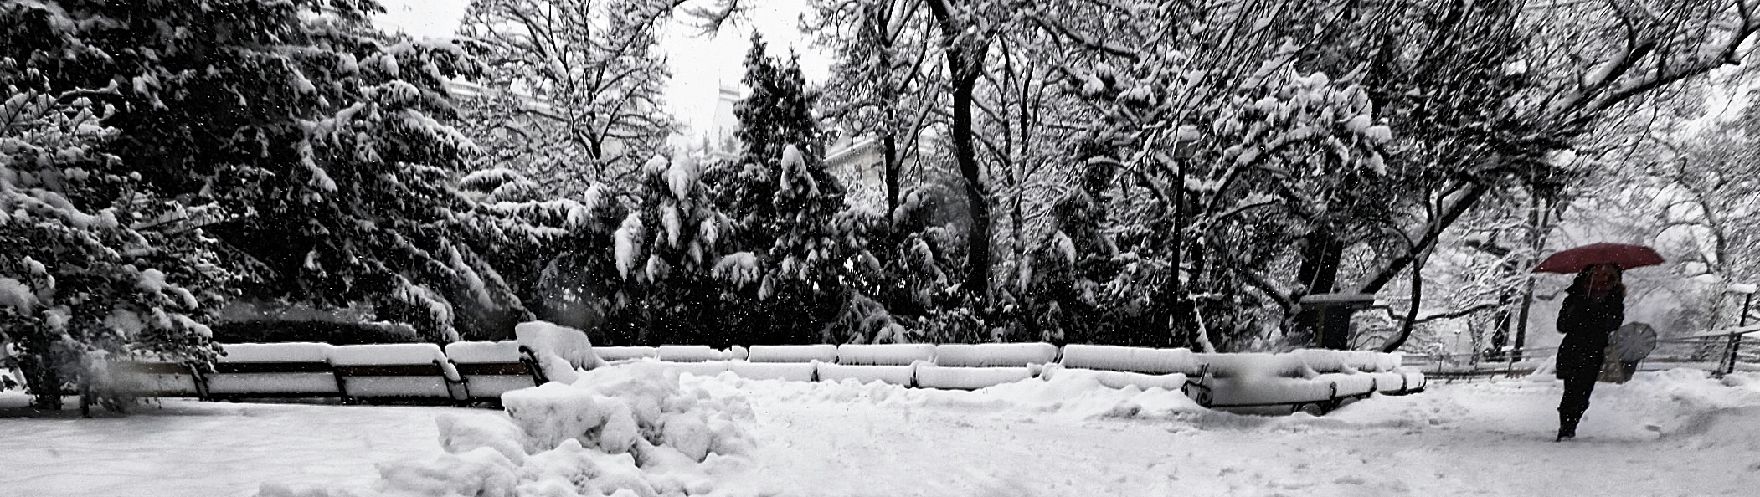 Eine winterliche Aufnahme des Rathausparks. Schlagworte: Bäume, Mensch, Natur, Regenschirm, Parkbänke, Schnee, Stadtlandschaft, Winter